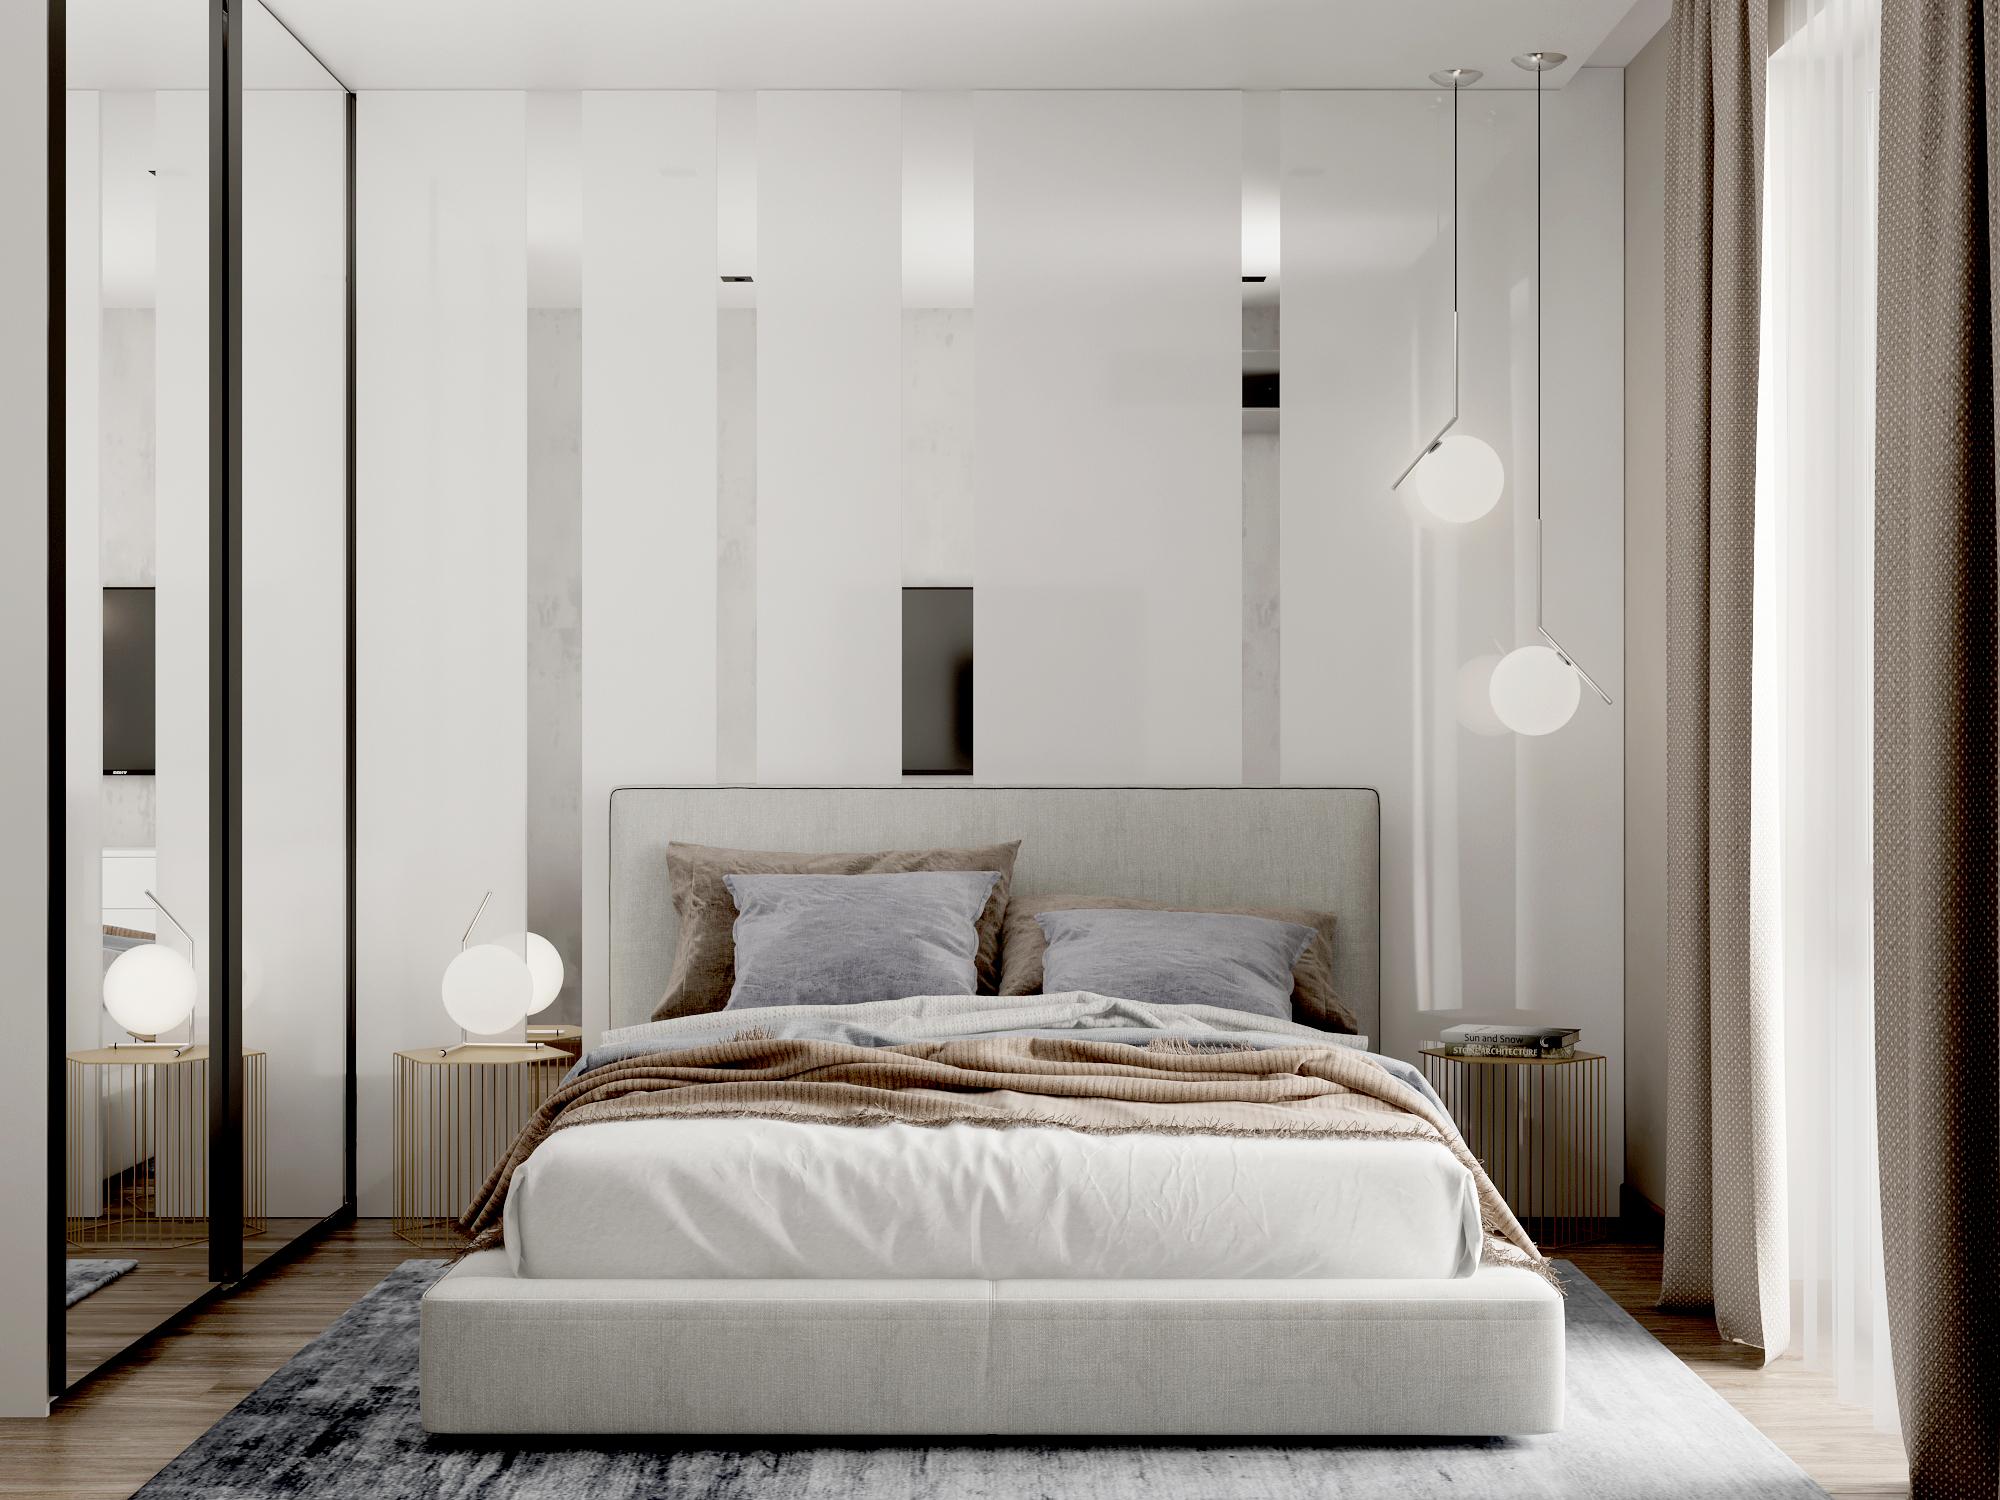 Интерьер спальни с подсветкой светодиодной и светильниками над кроватью